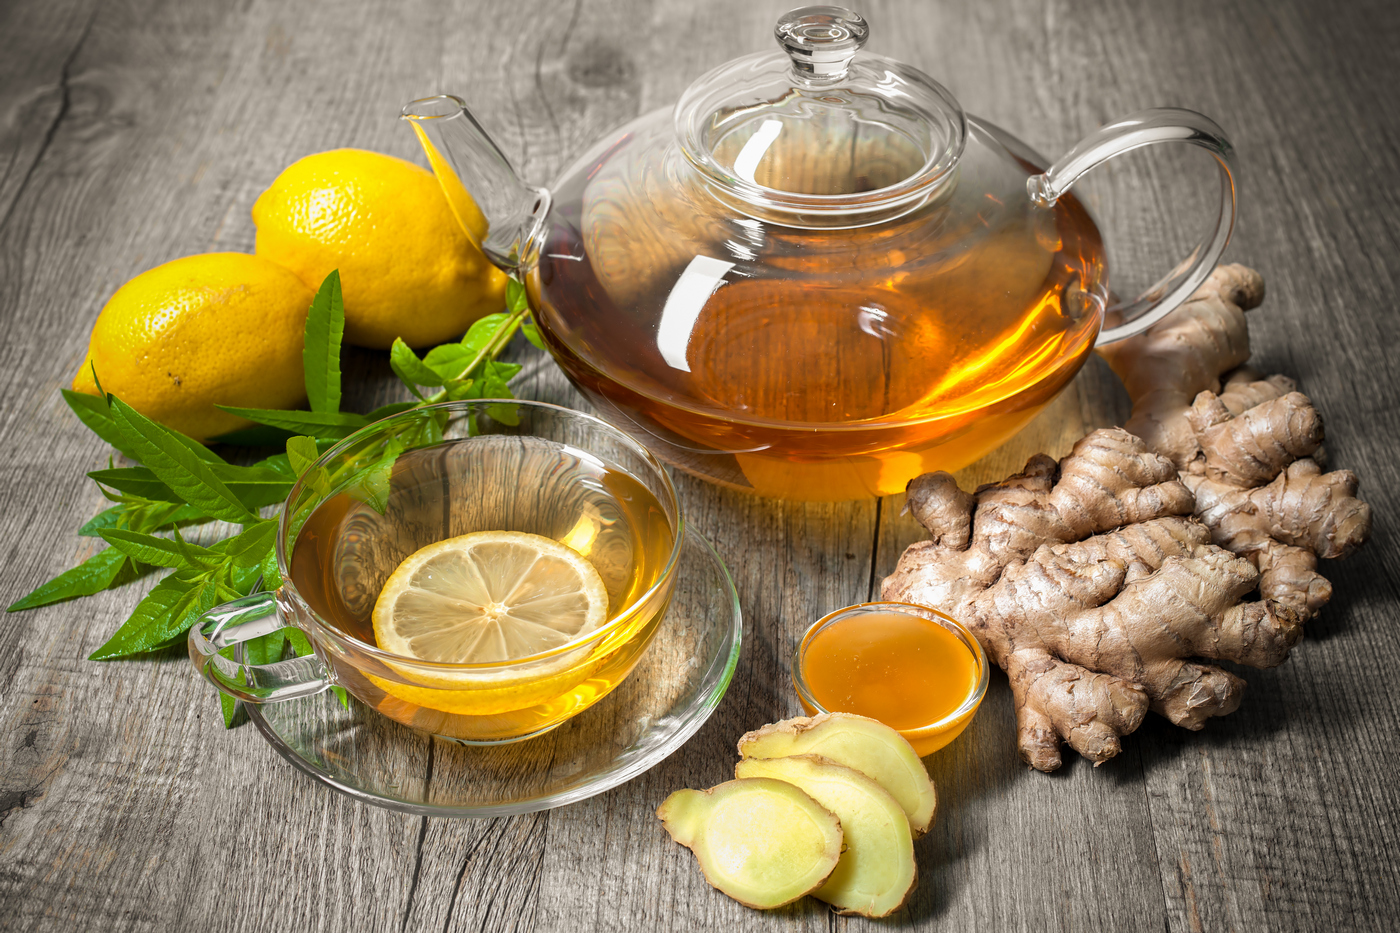 Ceai de ghimbir – proprietati, beneficii si utilizari